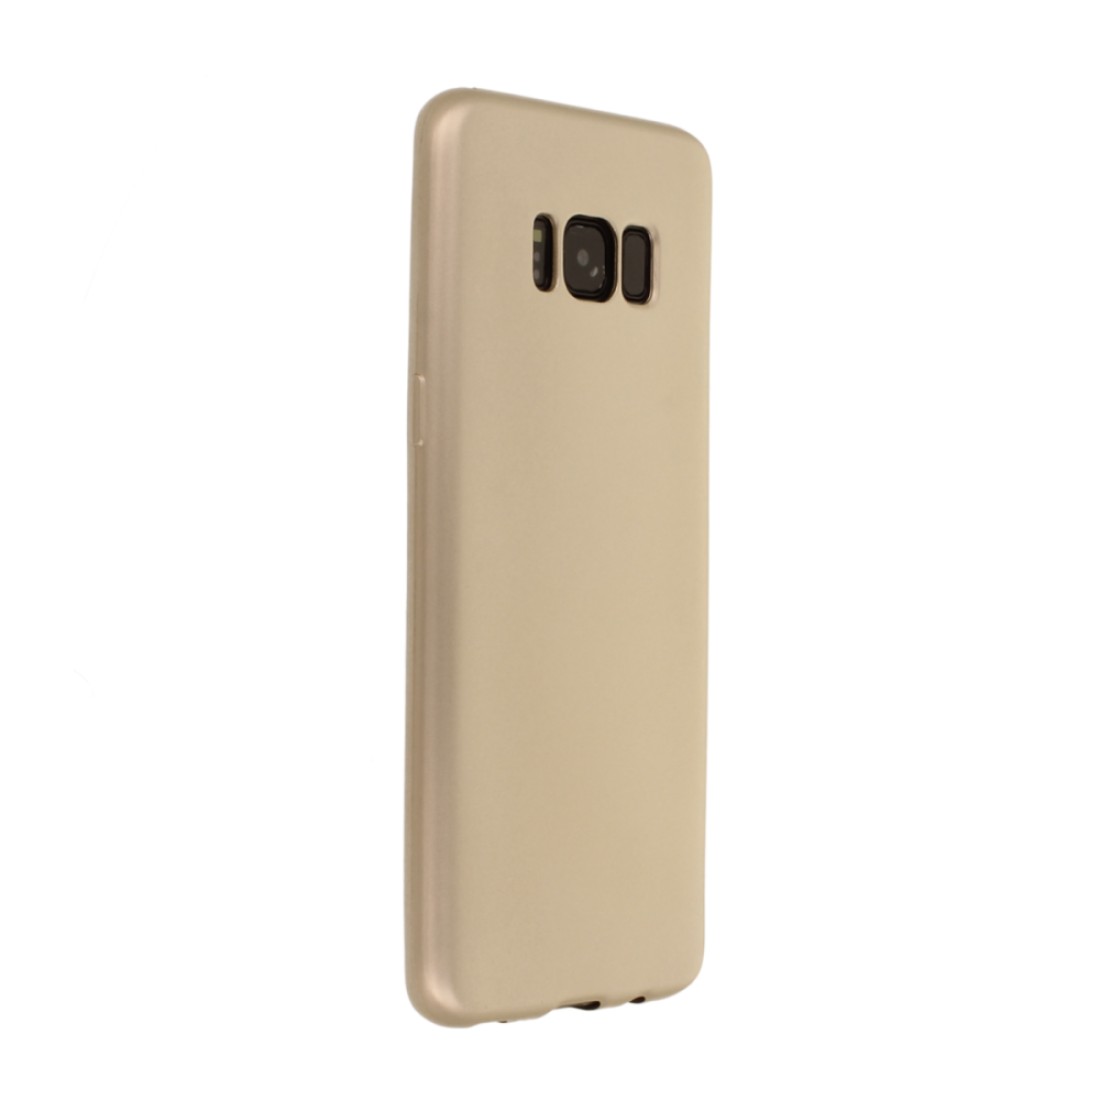 Samsung Galaxy S8 Kılıf Premium Rubber Silikon - Gold